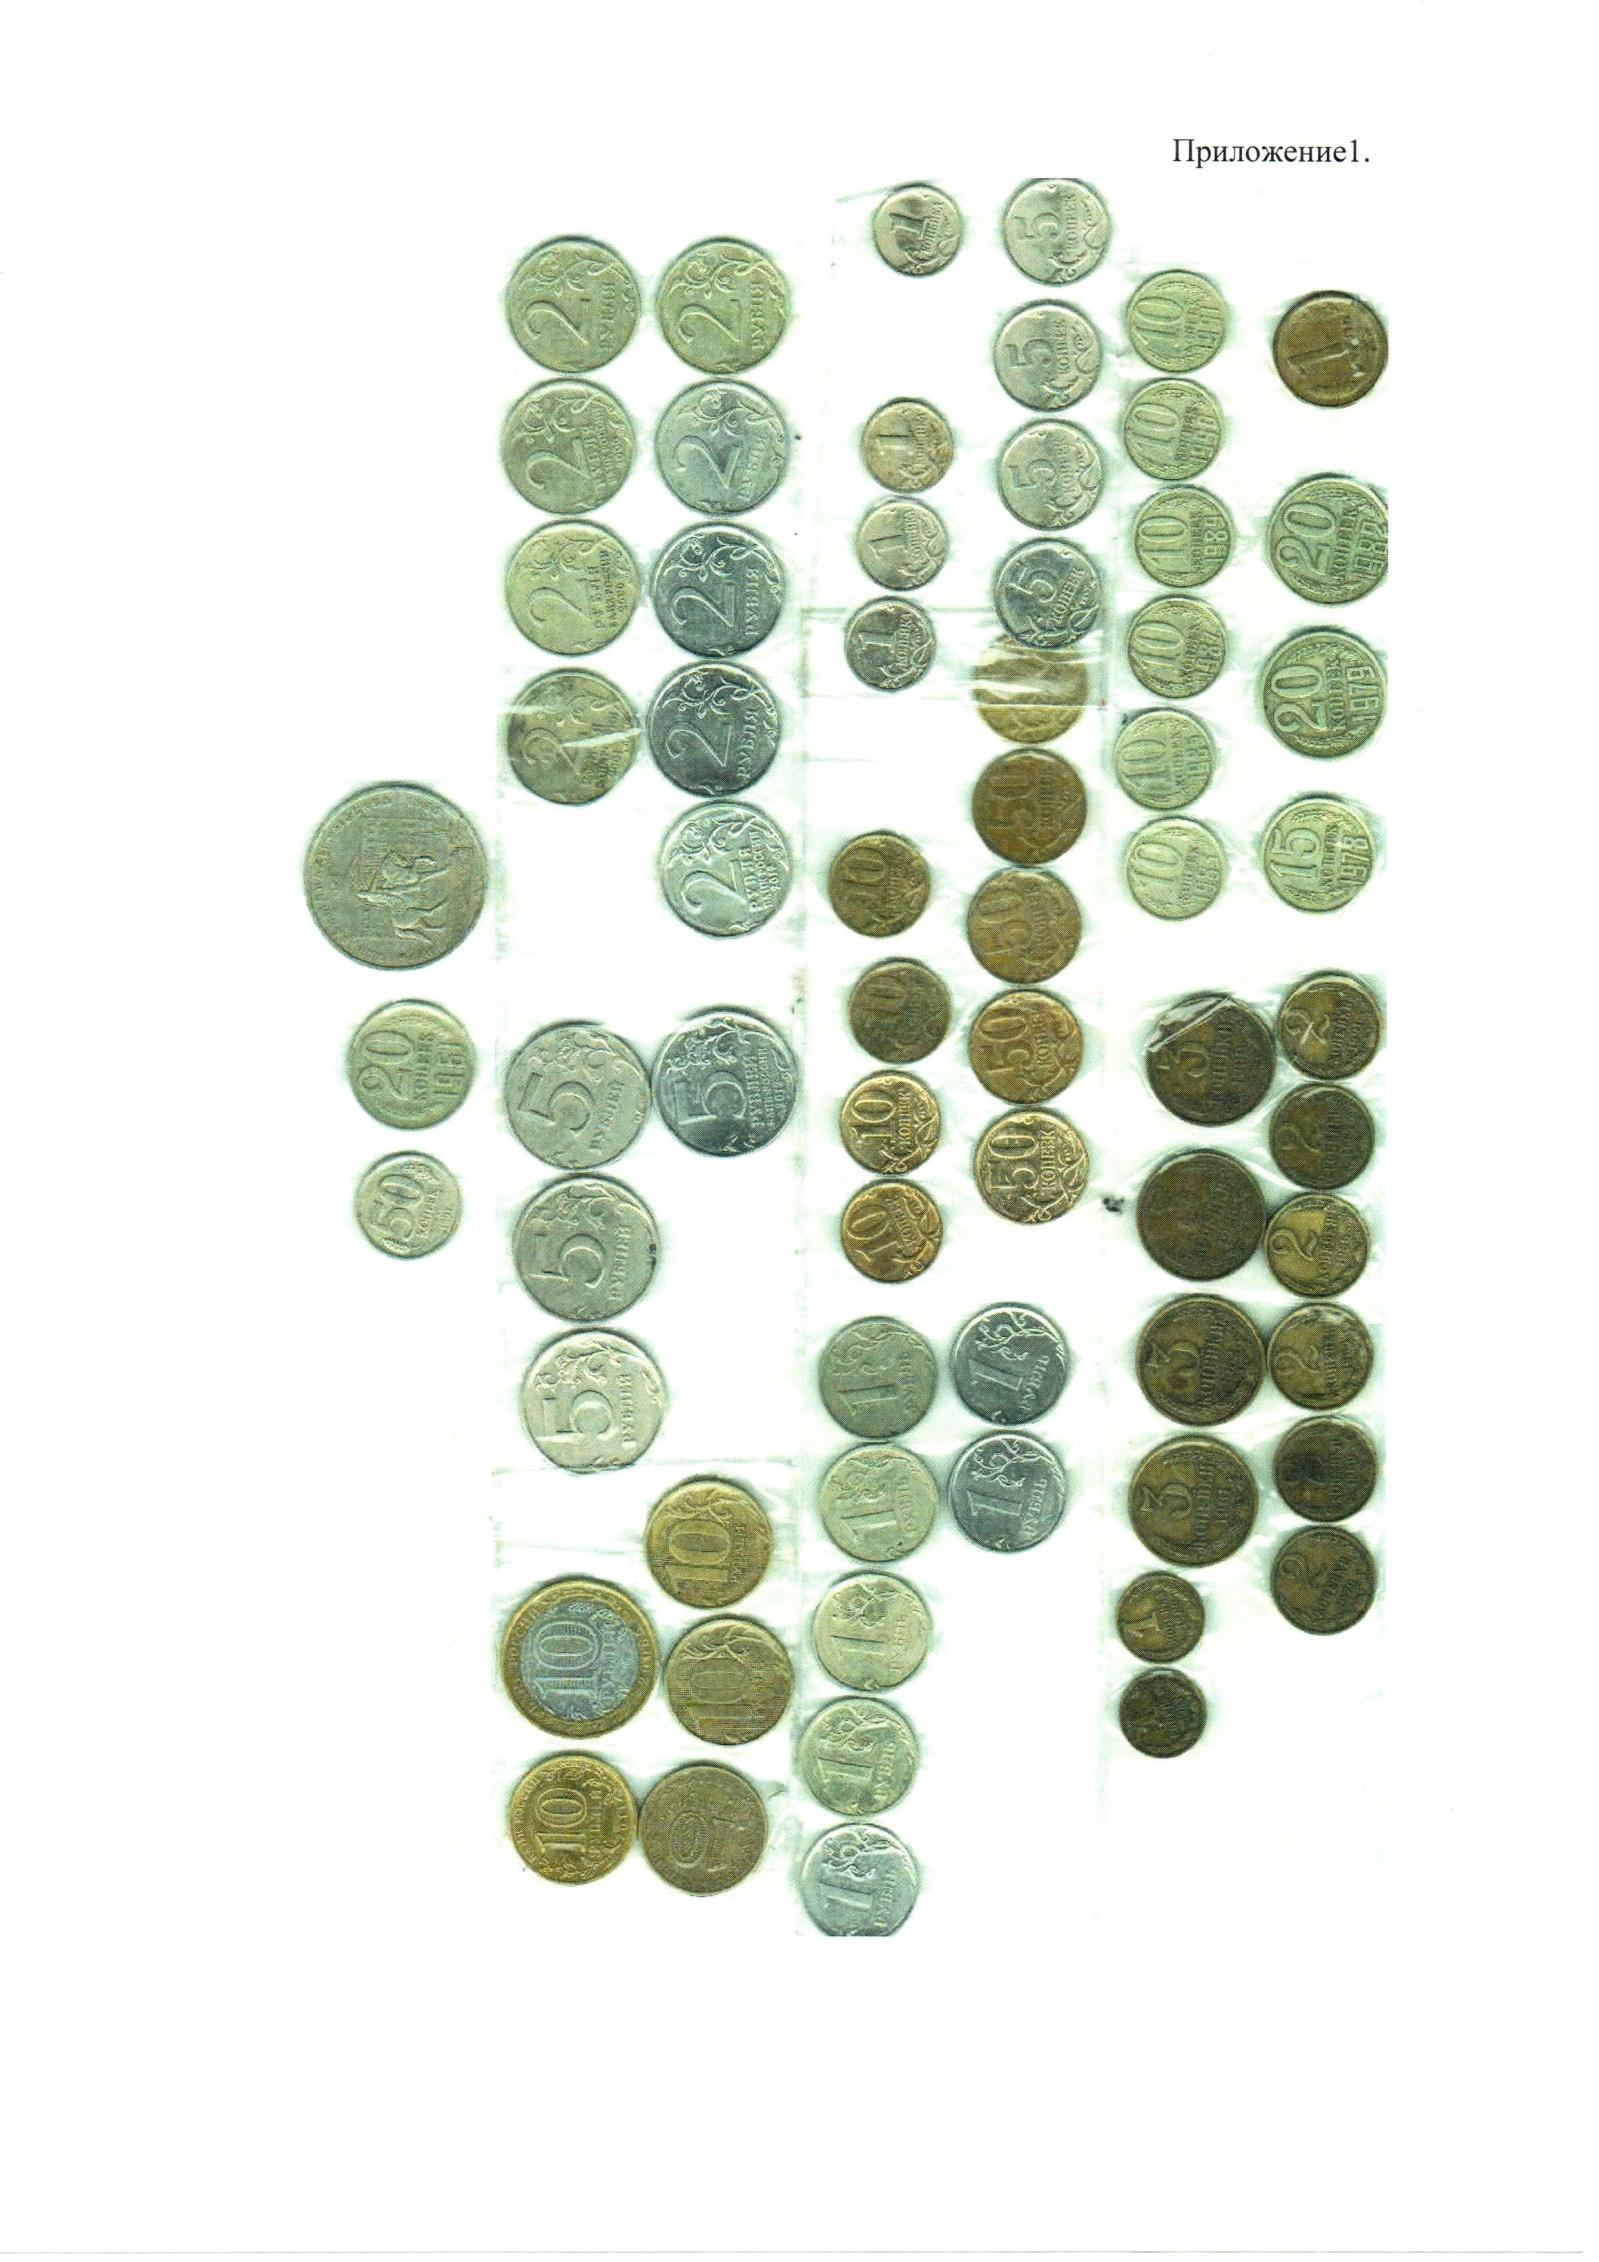 Программа для определения ценности монет по фото